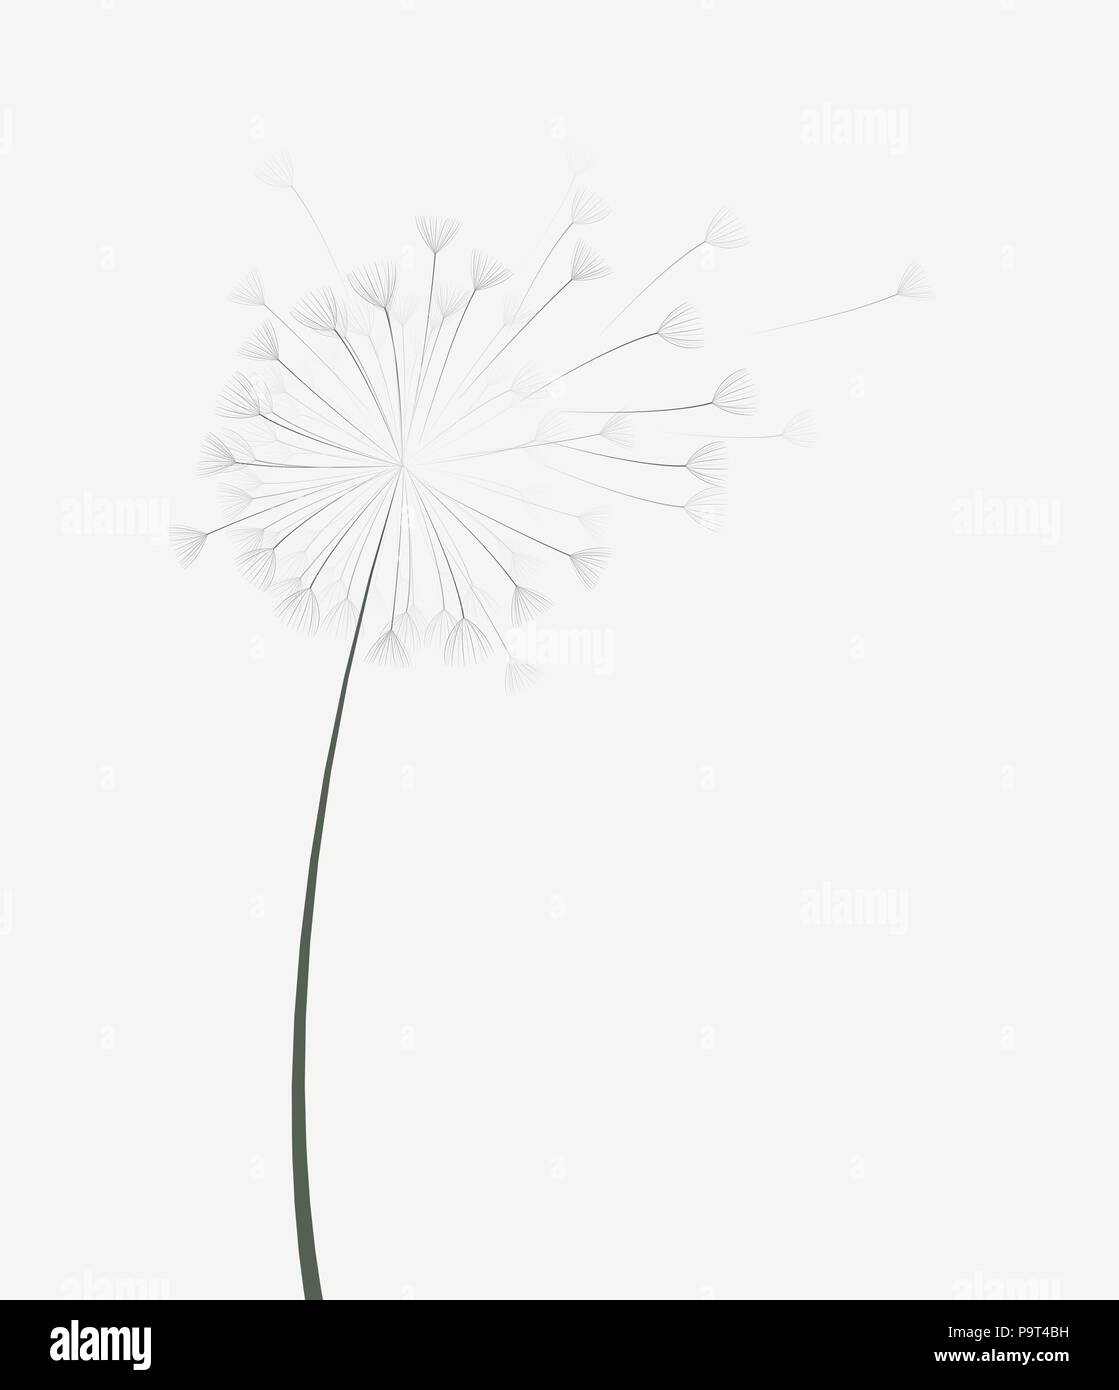 Vector illustration of dandelion flower in motion Stock Vector